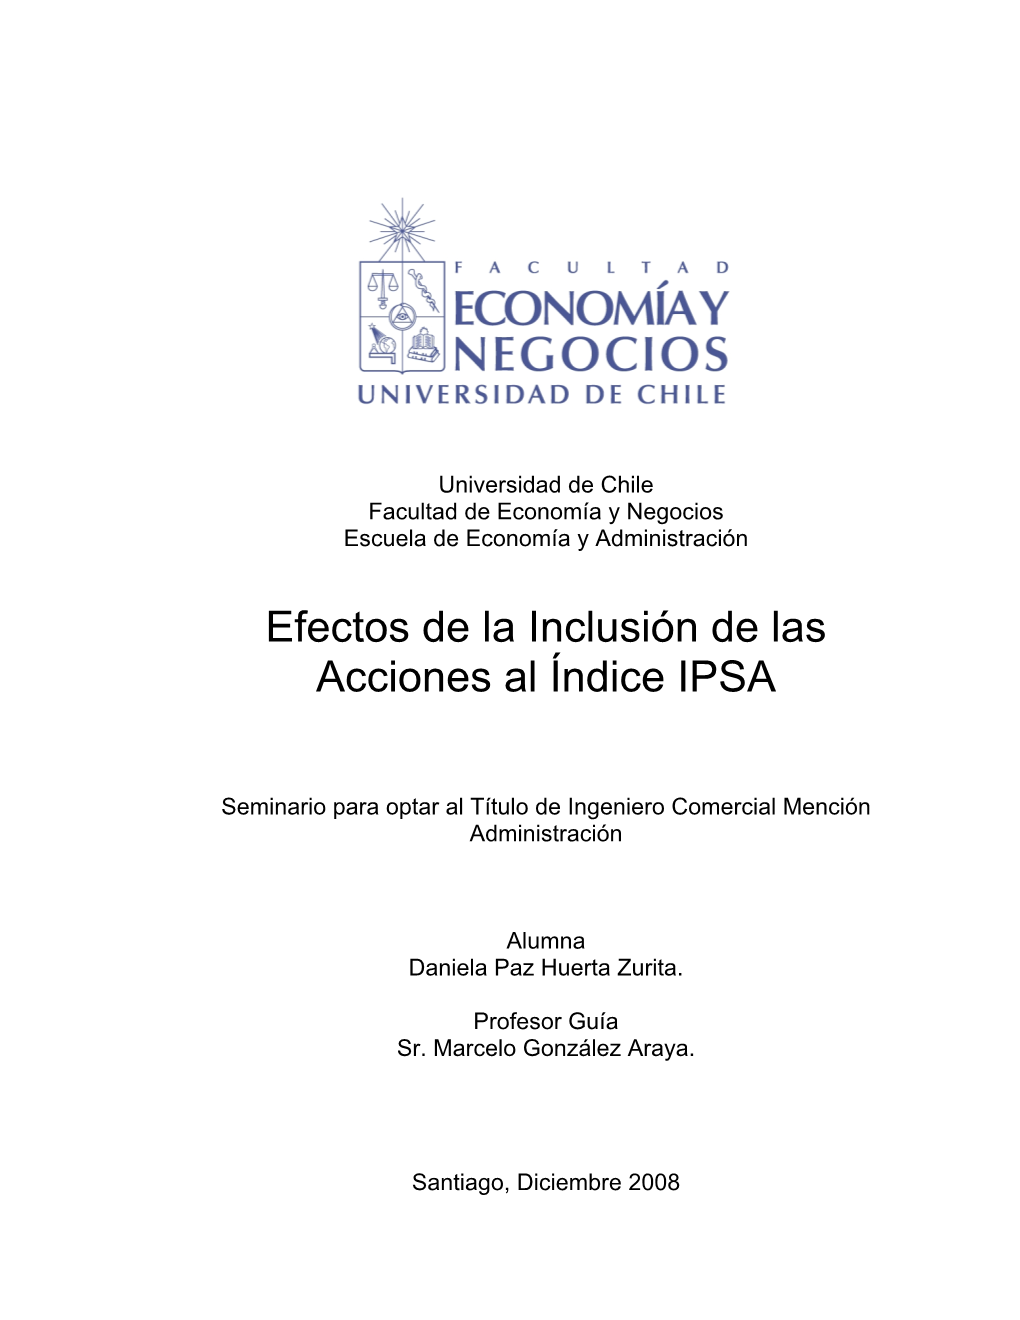 Efectos De La Inclusión De Las Acciones Al Índice IPSA